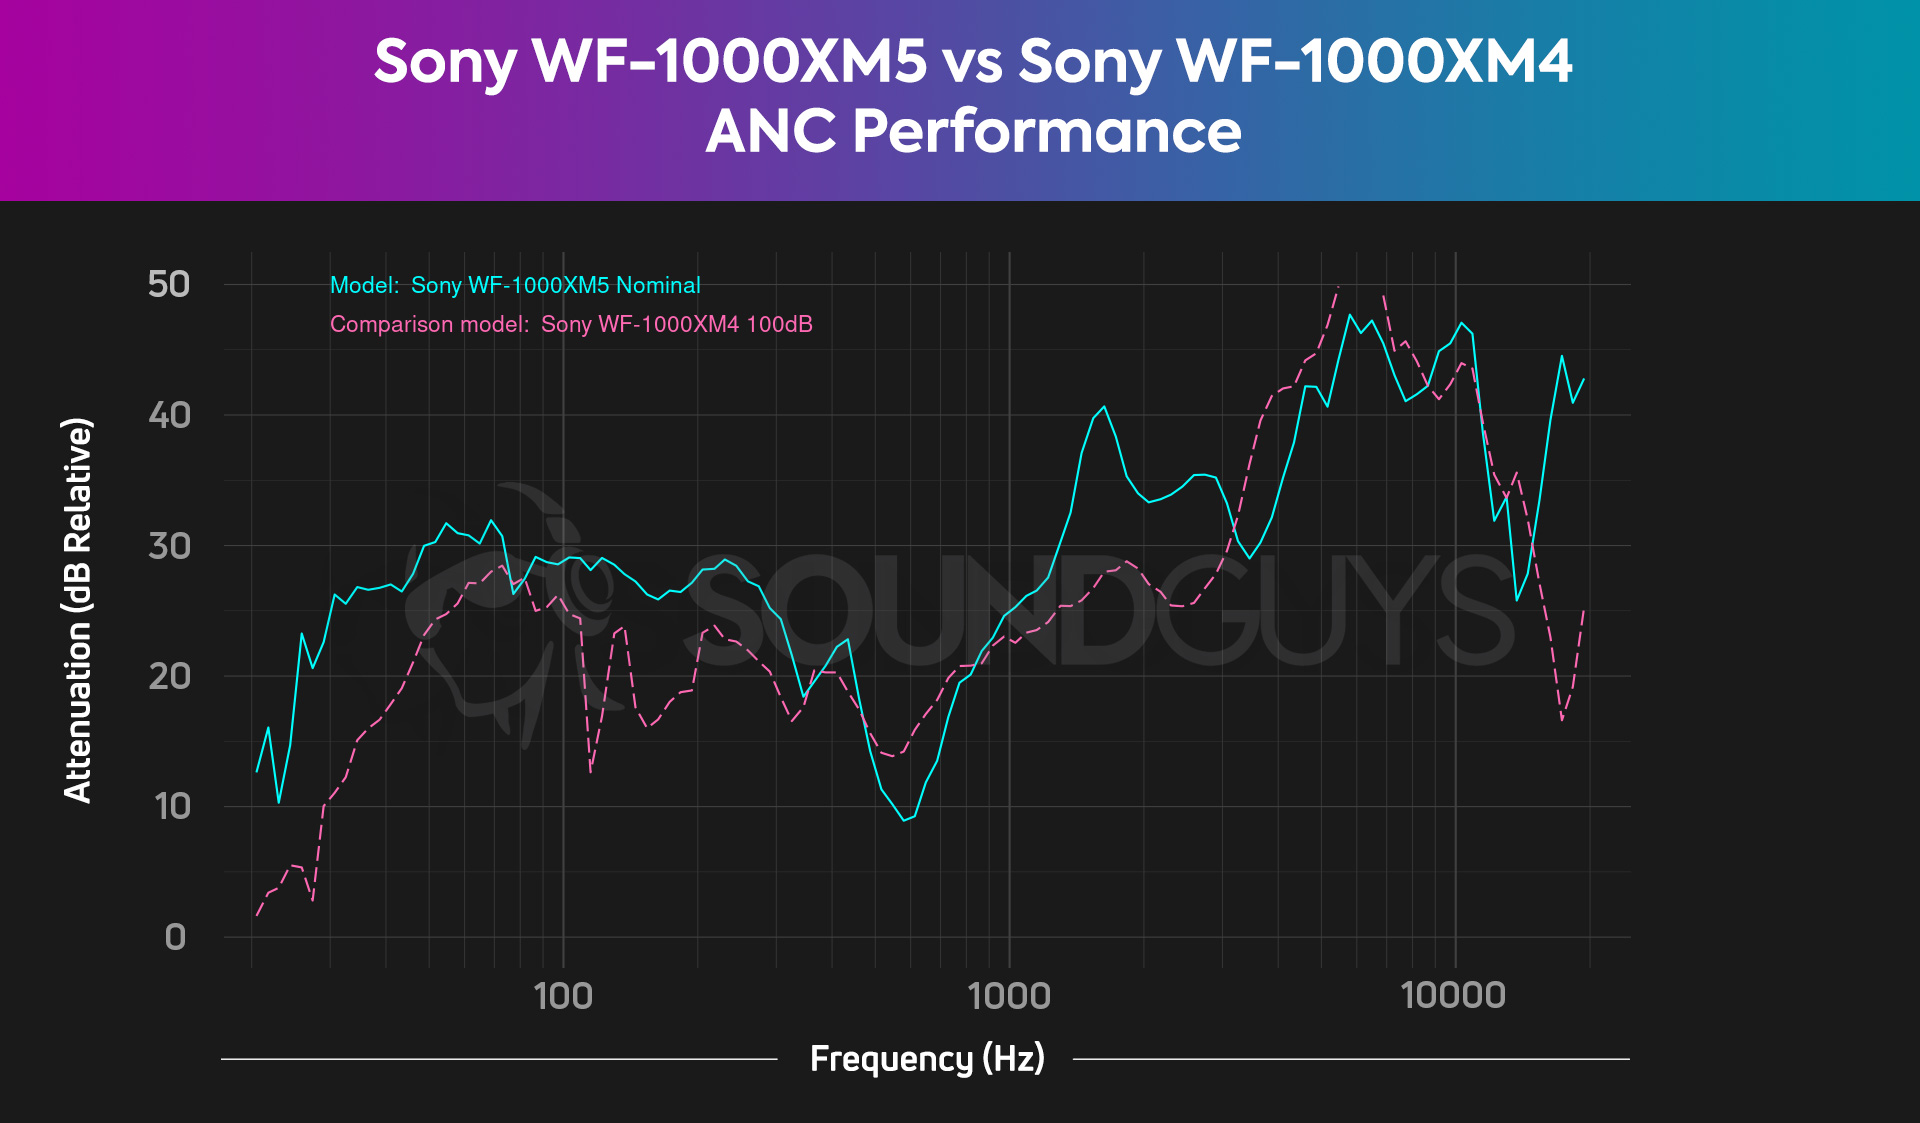 Sony WF 1000XM5 vs Sony WF 1000XM4 comparison ANC attenuation performance chart